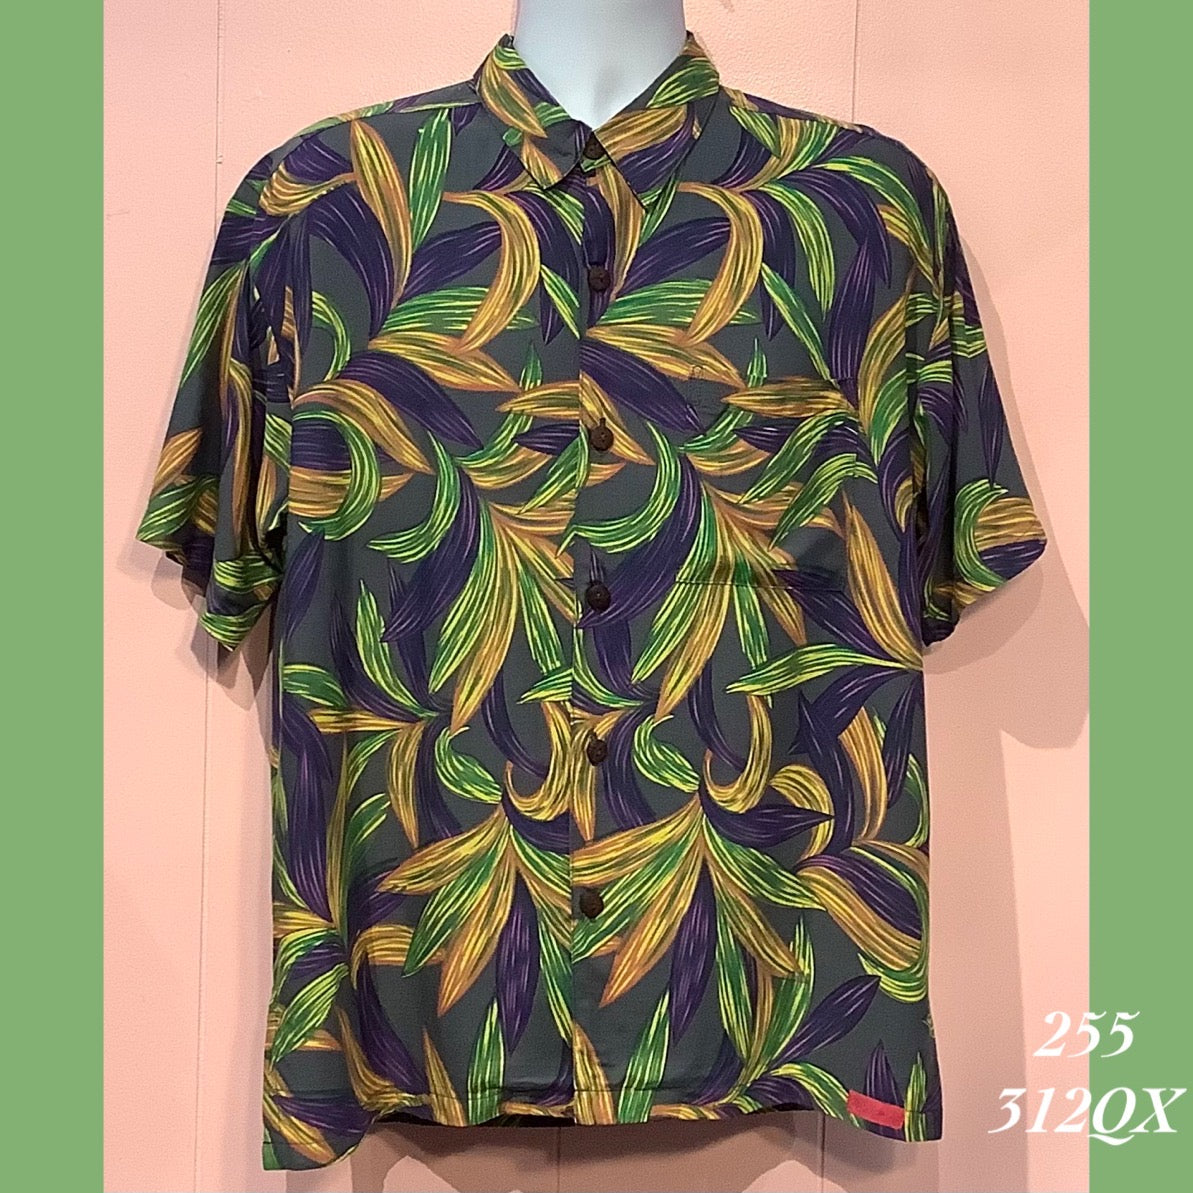 255 - 312QX , Men's Aloha shirt